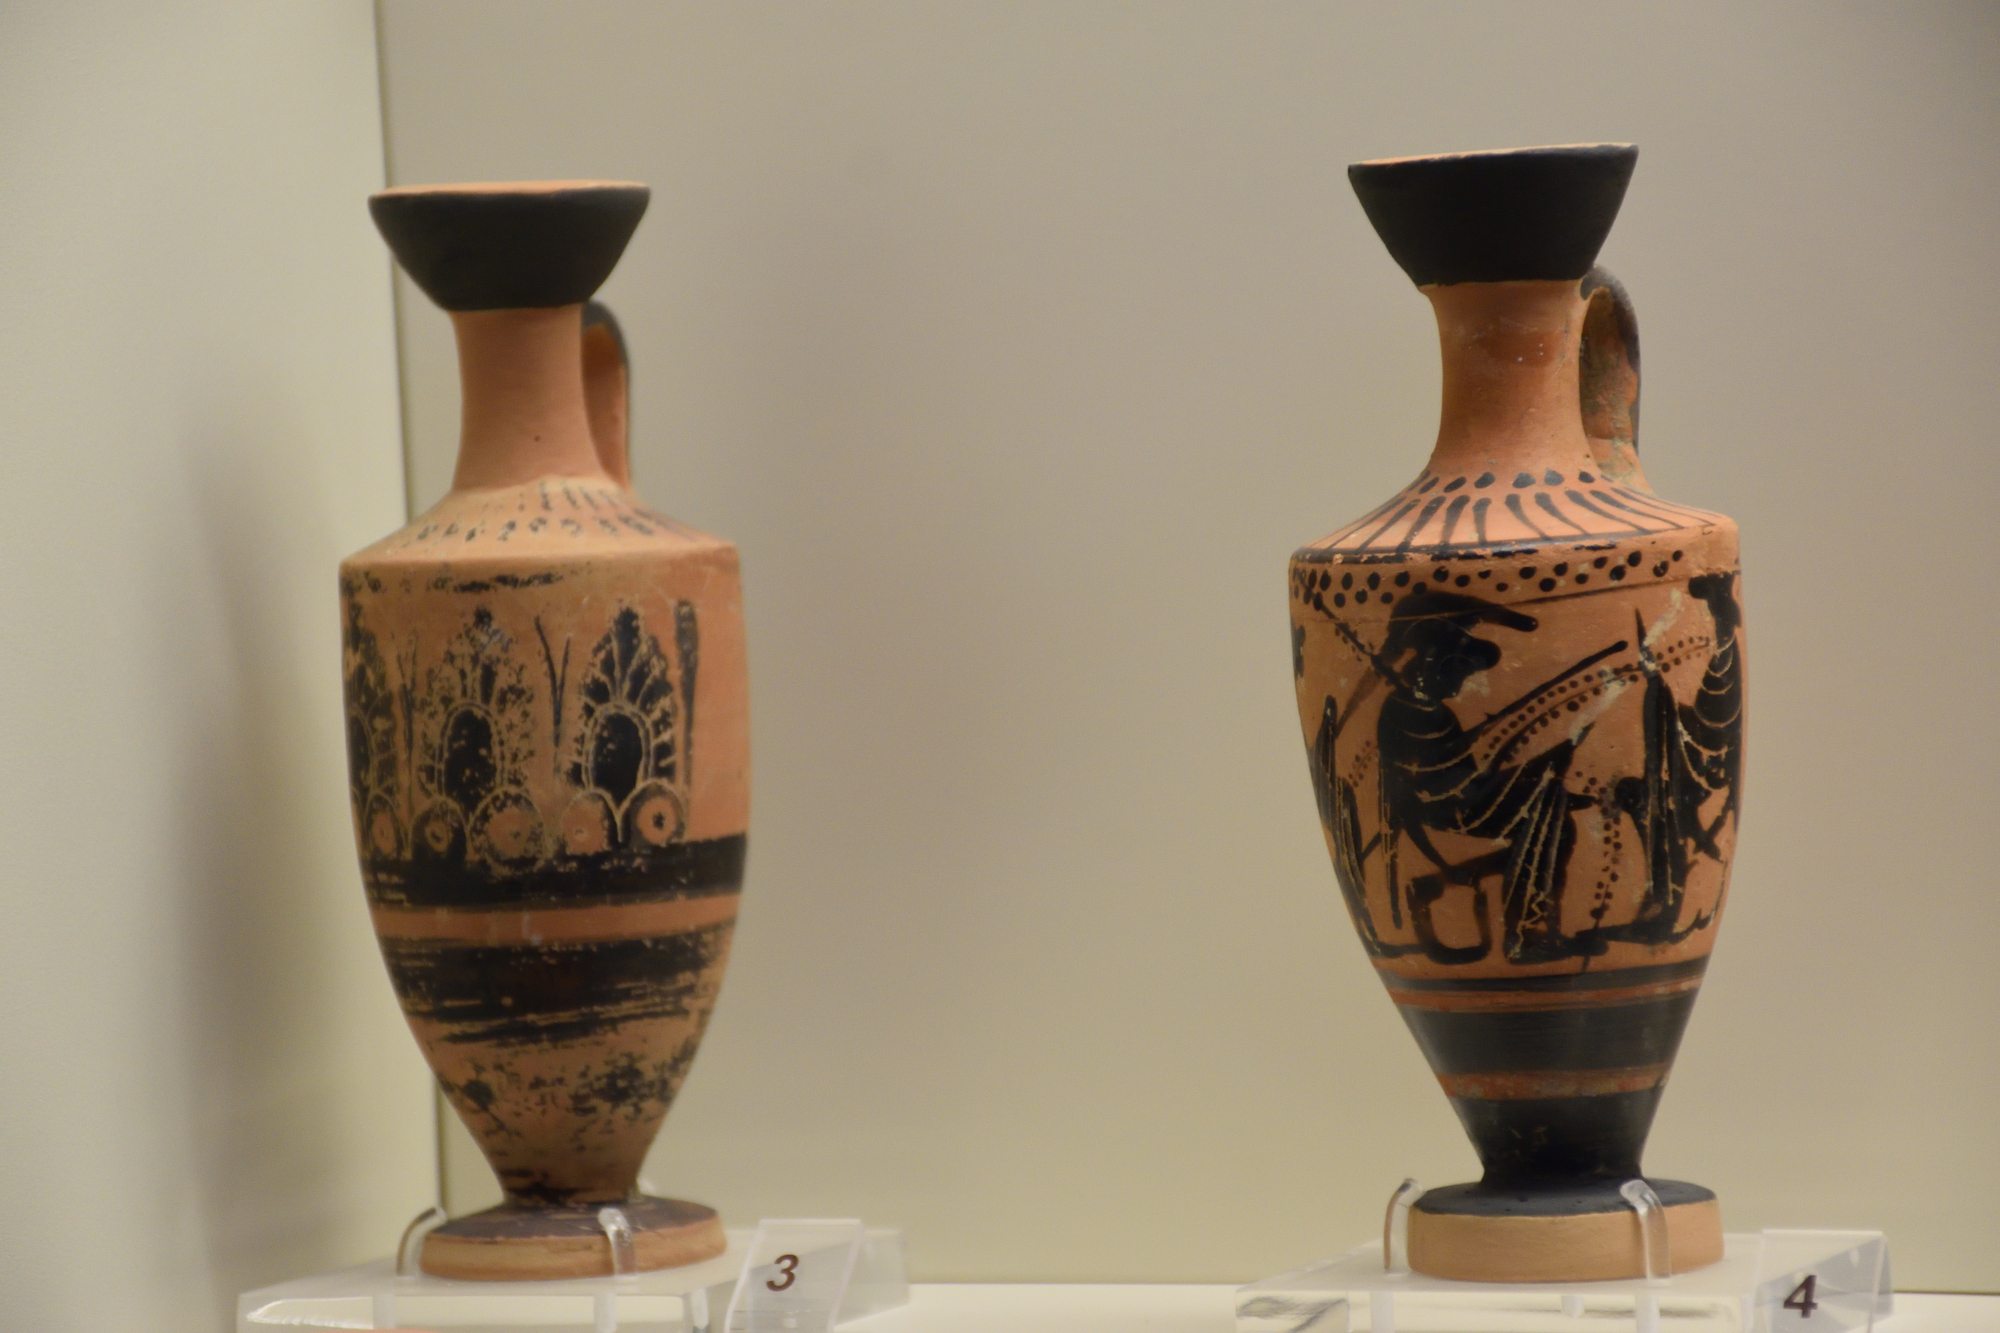 Cretan artefacts